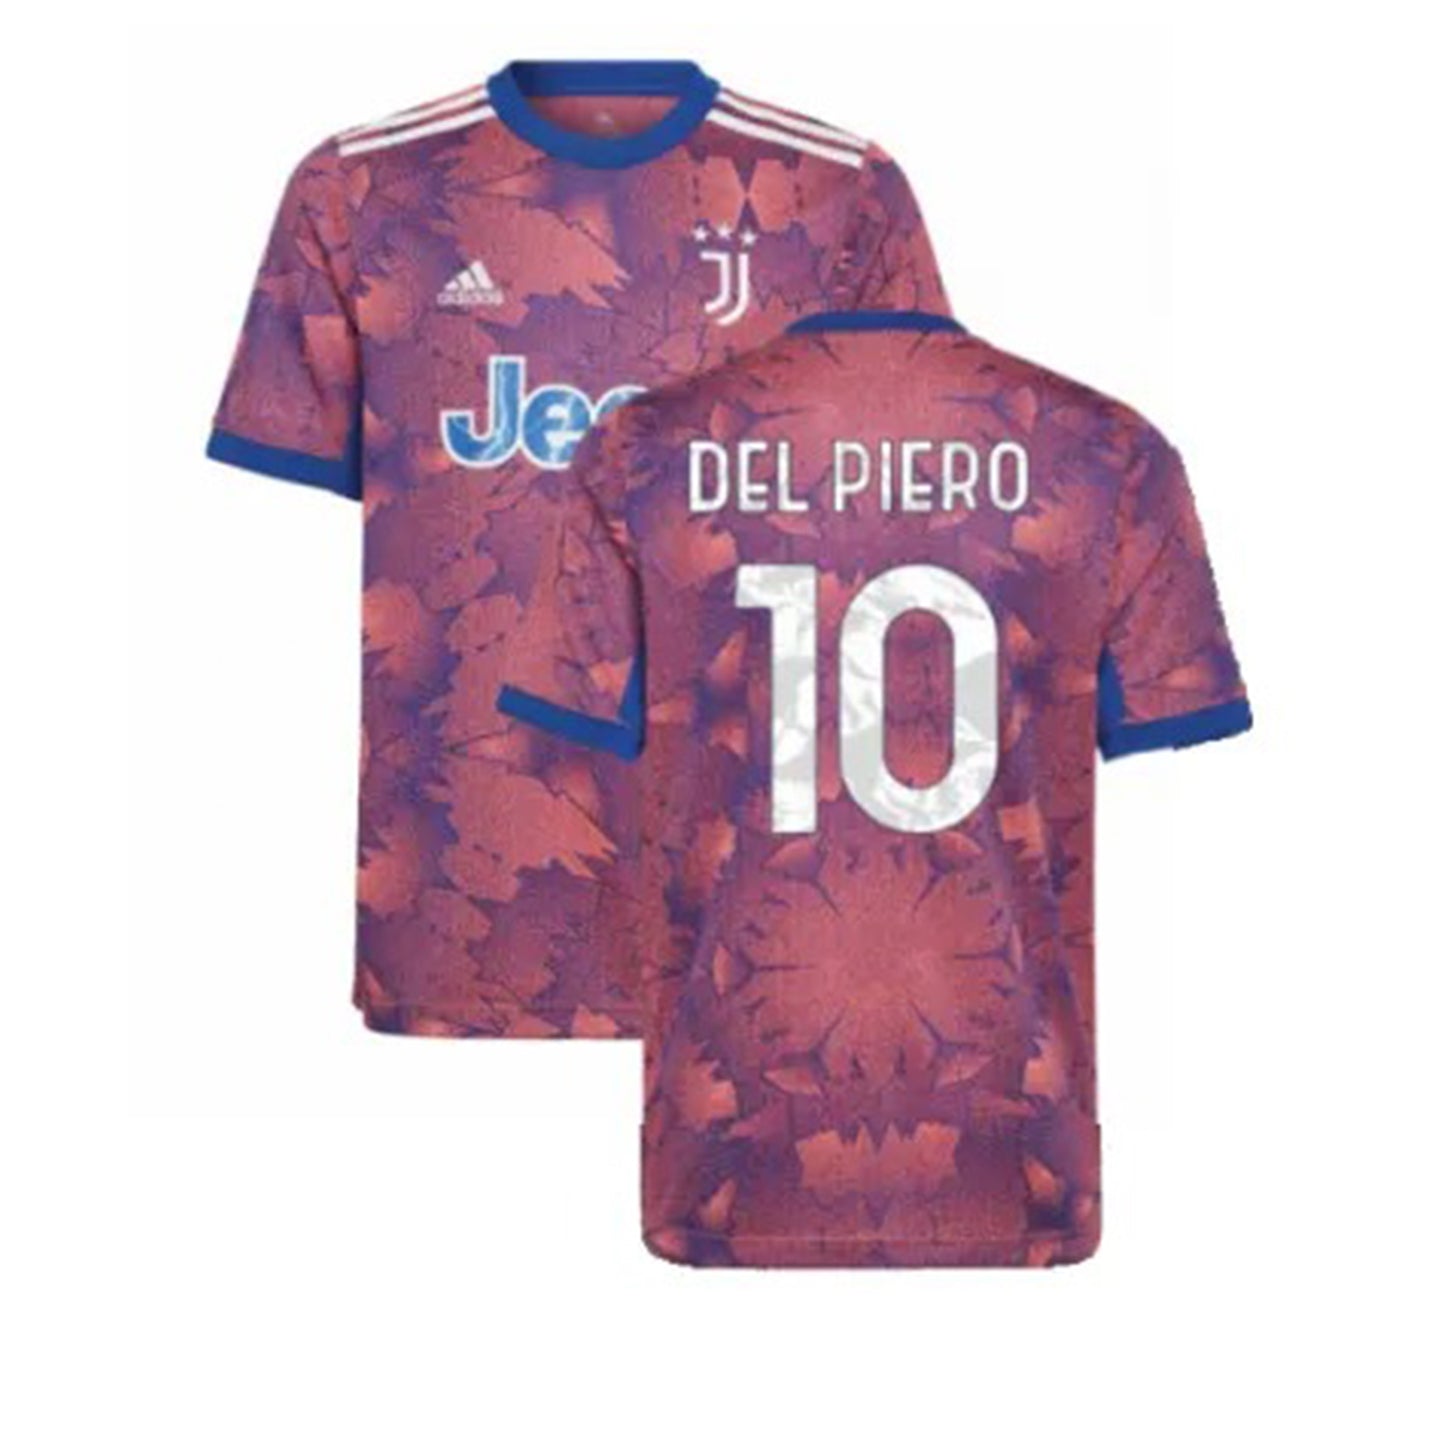 Alessandro Del Piero Juventus 10 Jersey